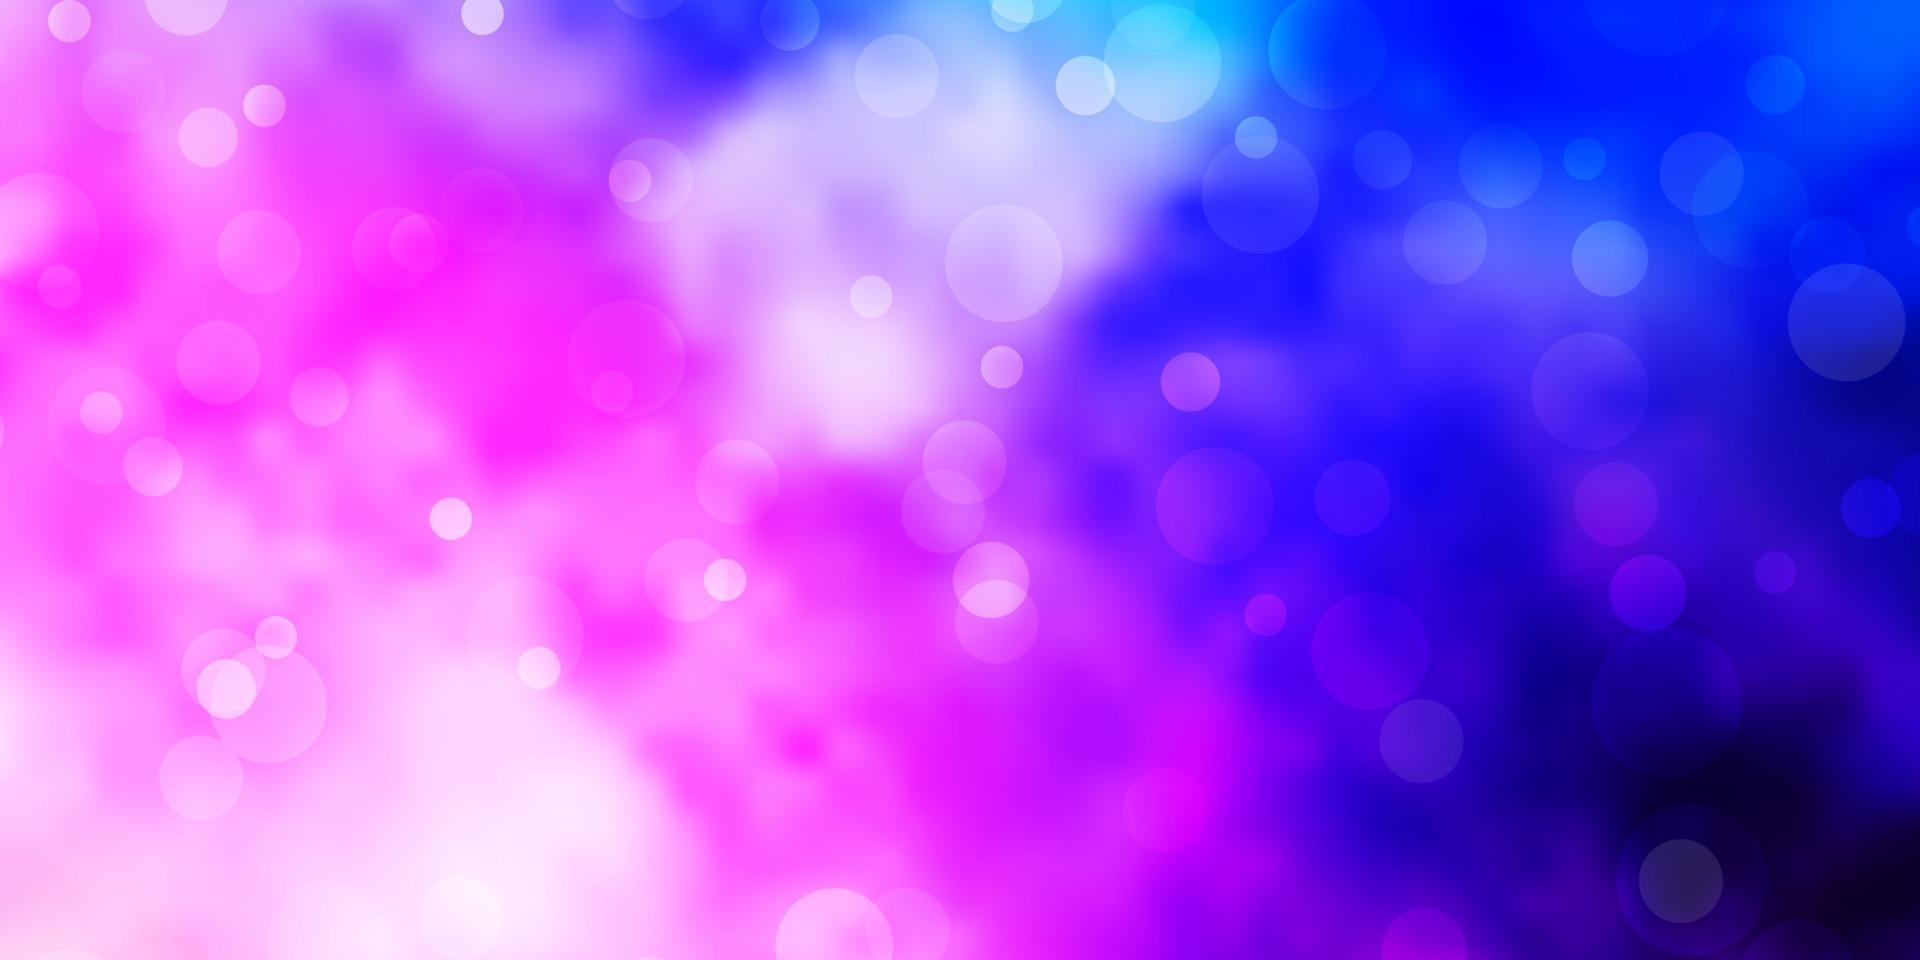 sfondo vettoriale rosa chiaro, blu con bolle.